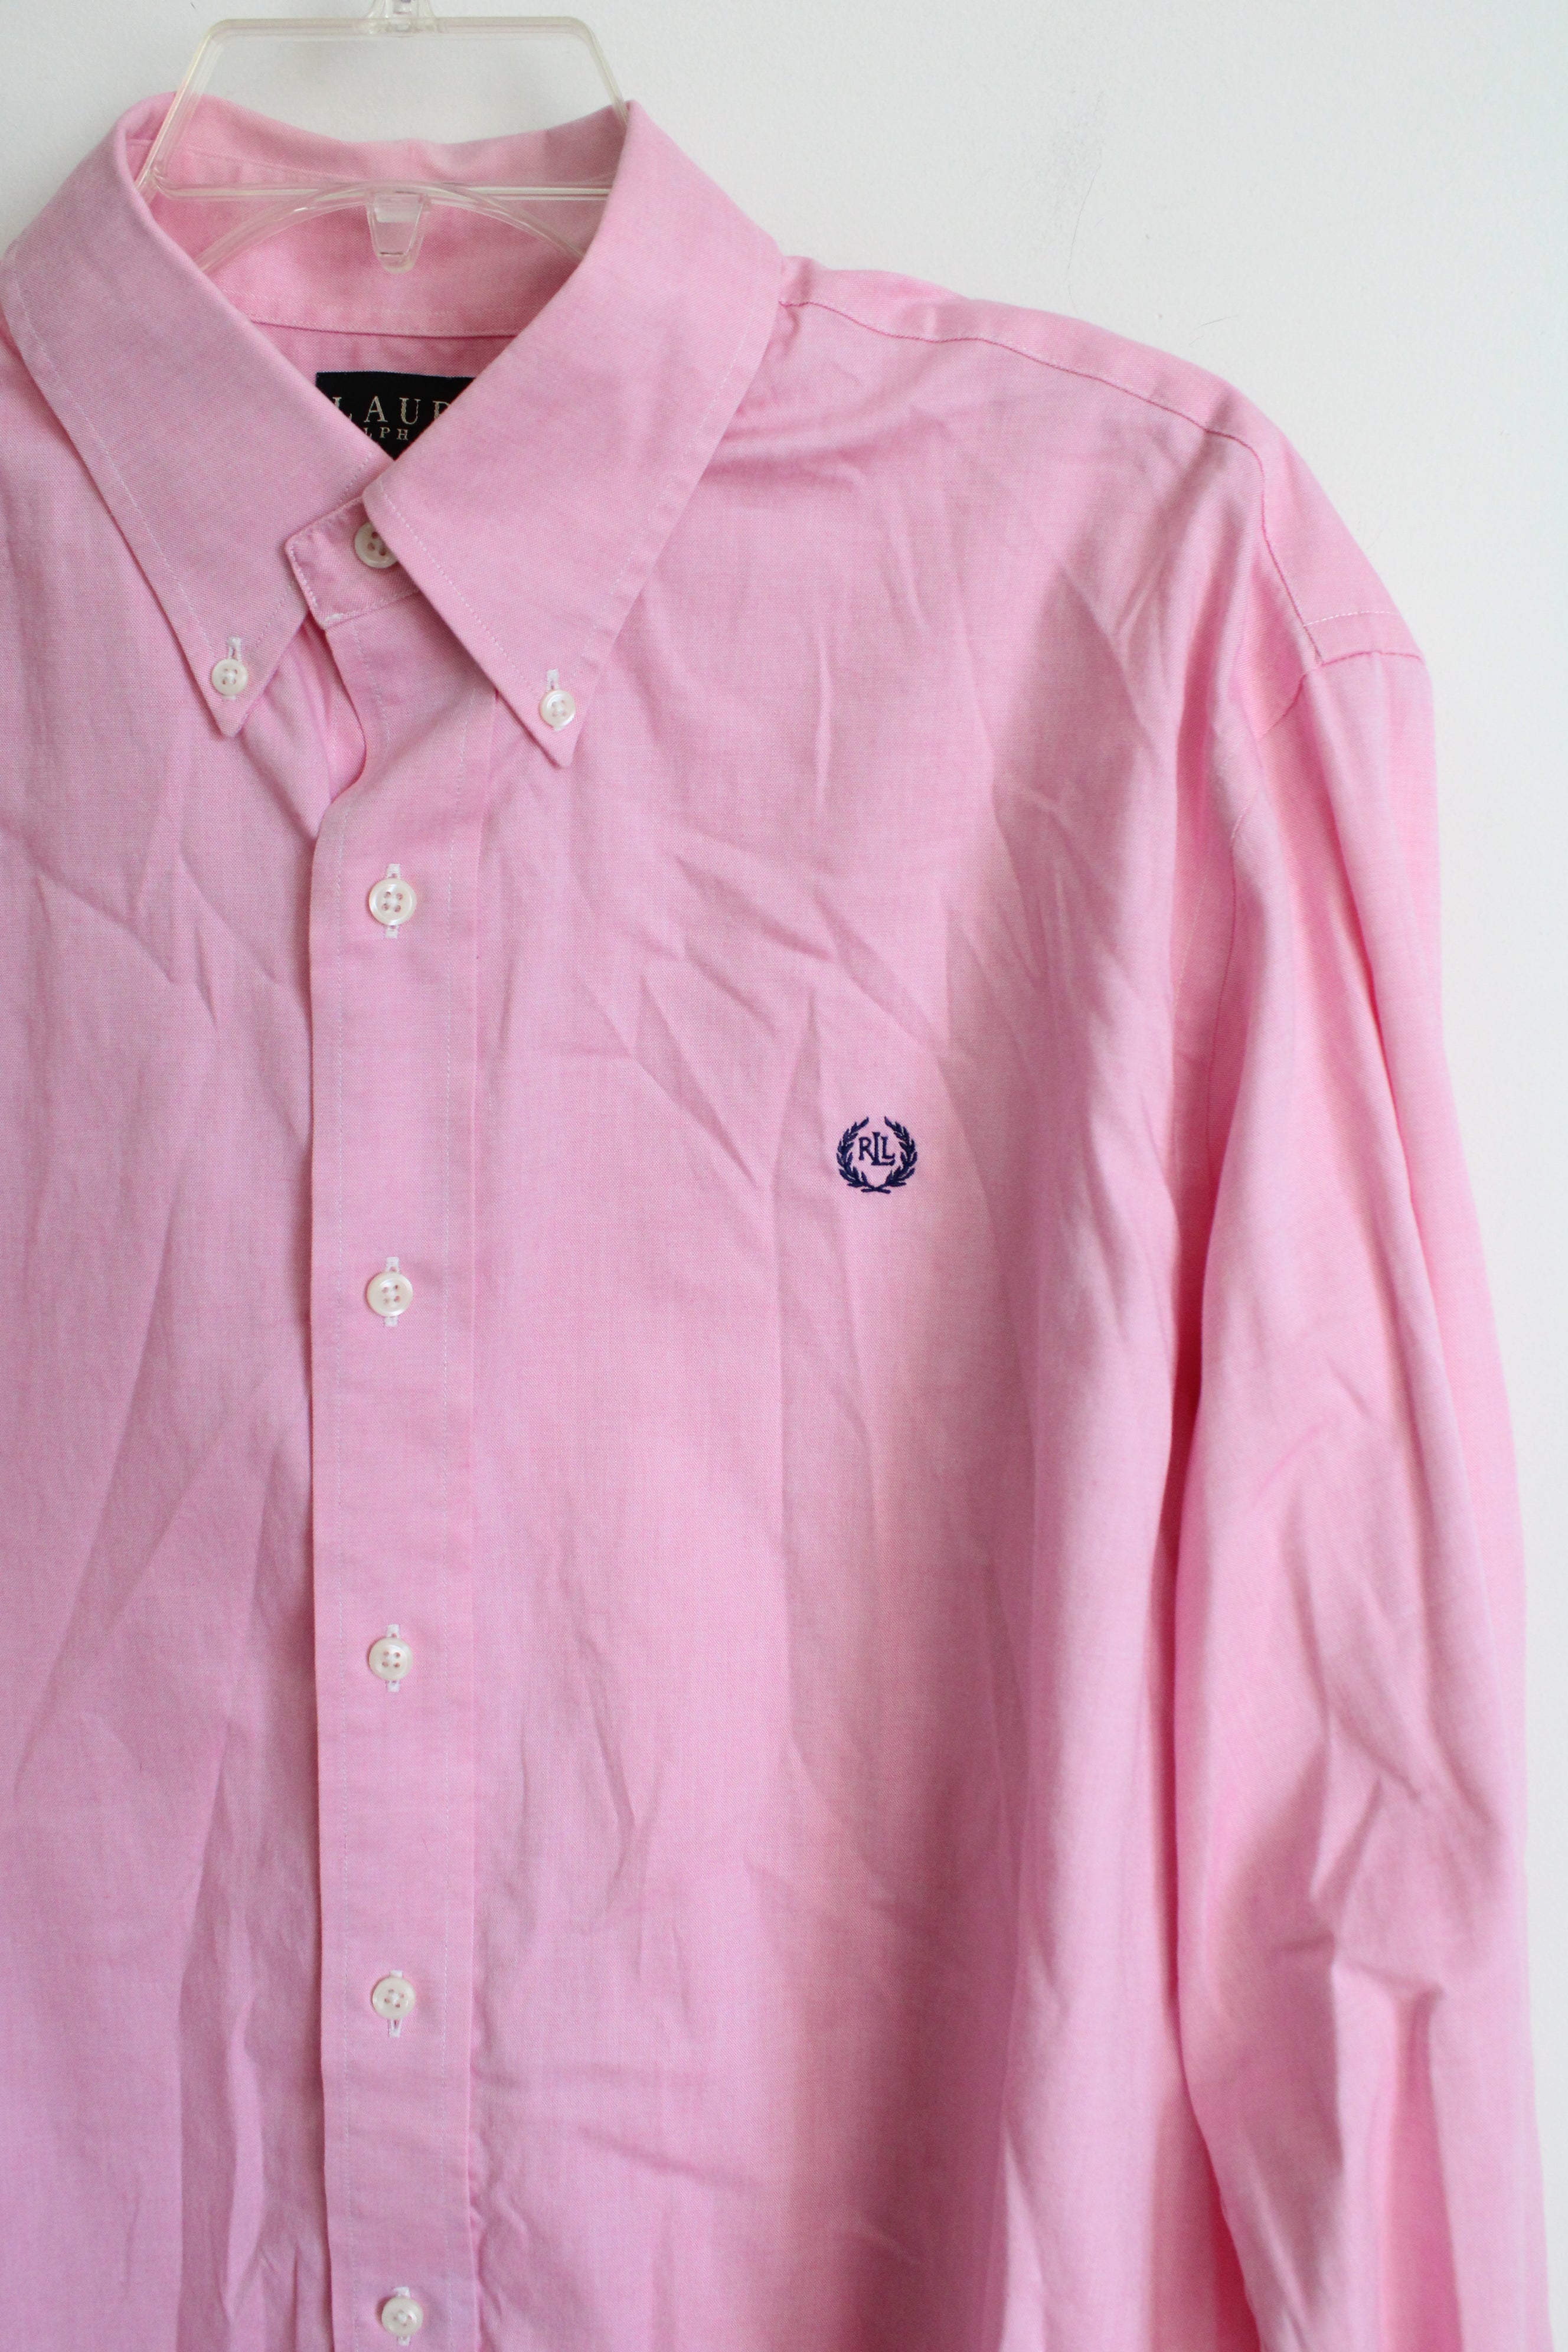 Ralph Lauren Classic Fit Pink Button Down Shirt | 17 (XL)